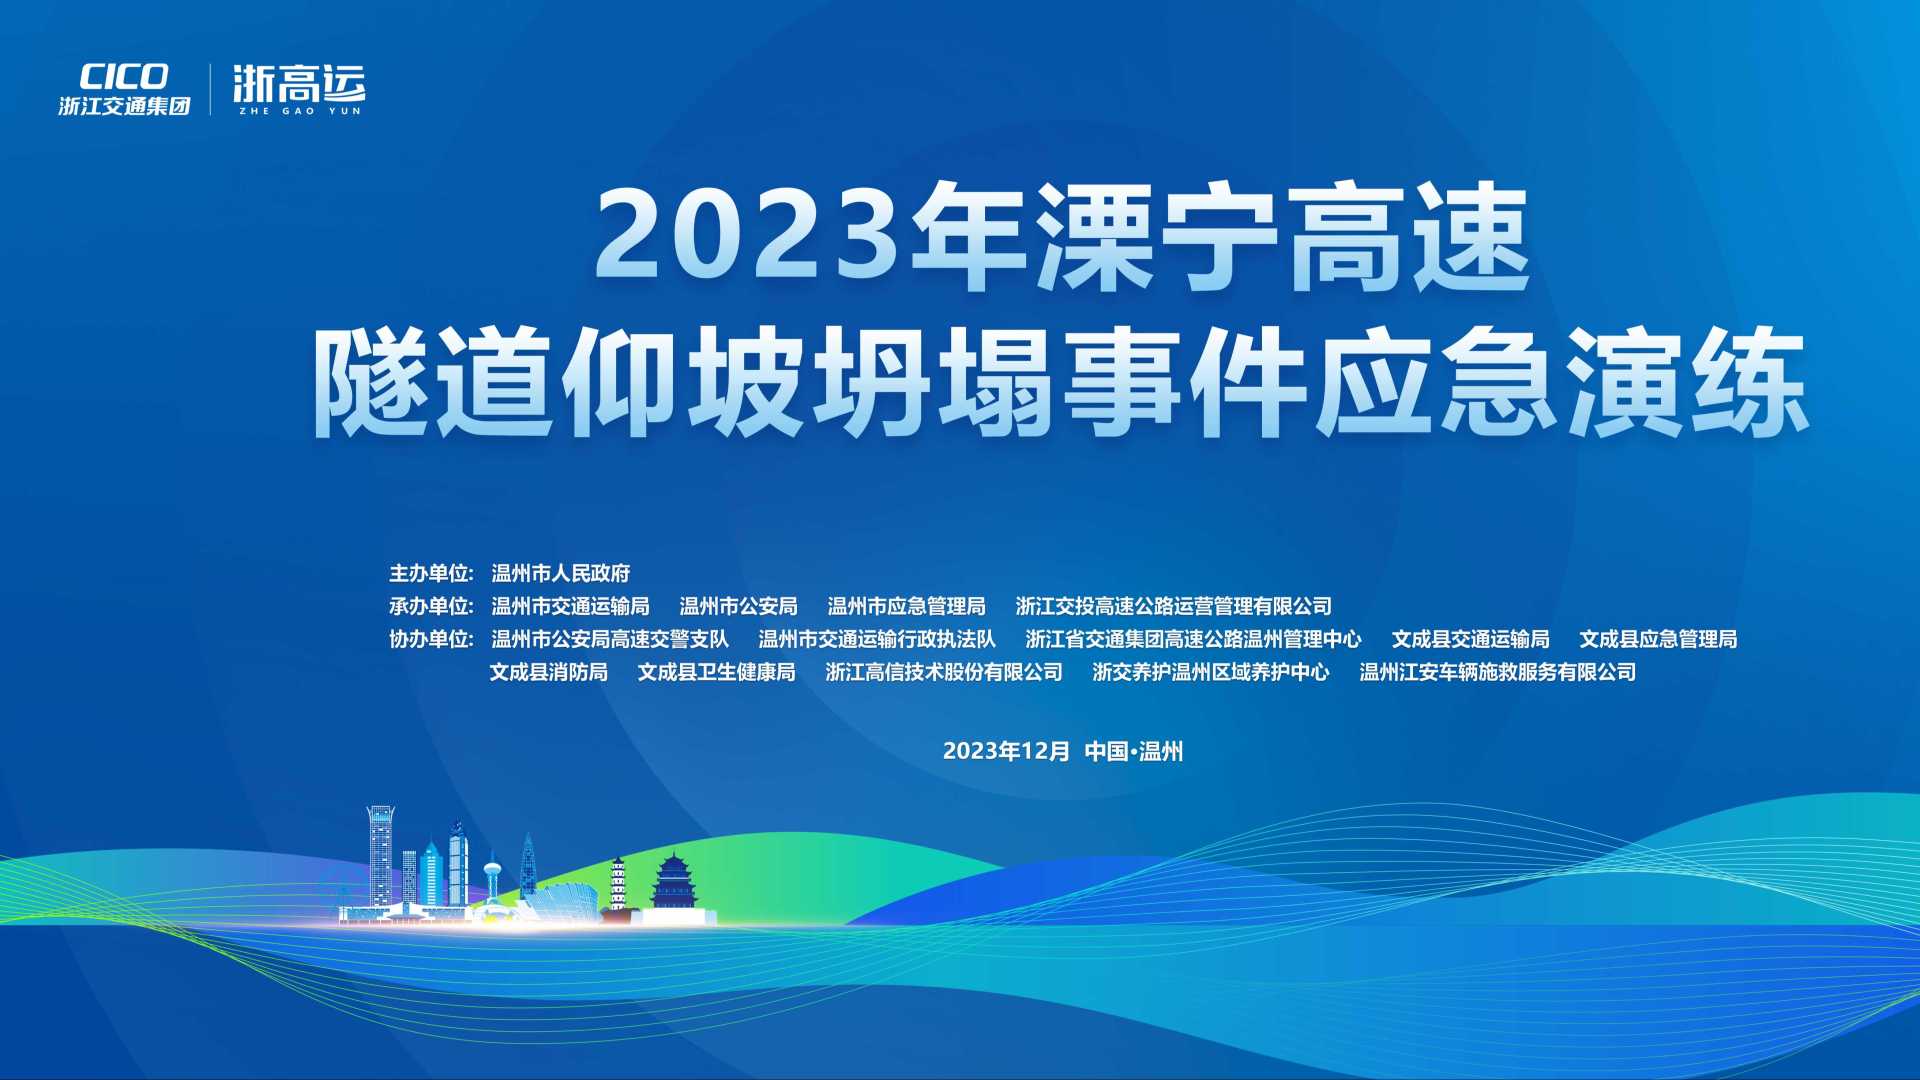 2023年溧宁高速隧道仰坡坍塌事件应急演练